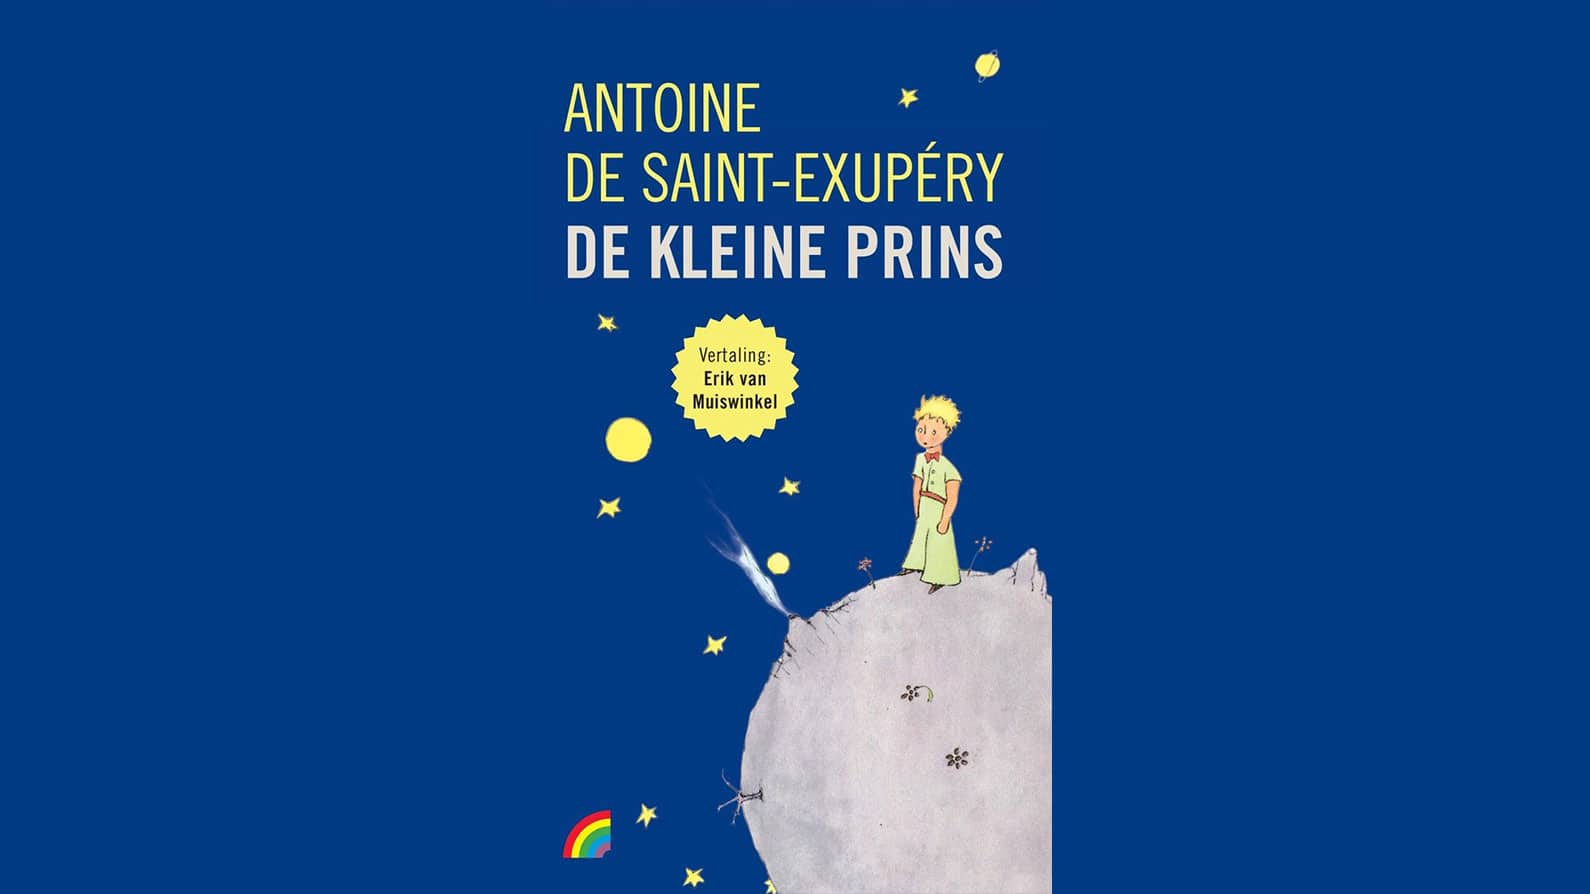 De Kleine Prins van Antoine de Saint-Exupéry planeet kind sterren